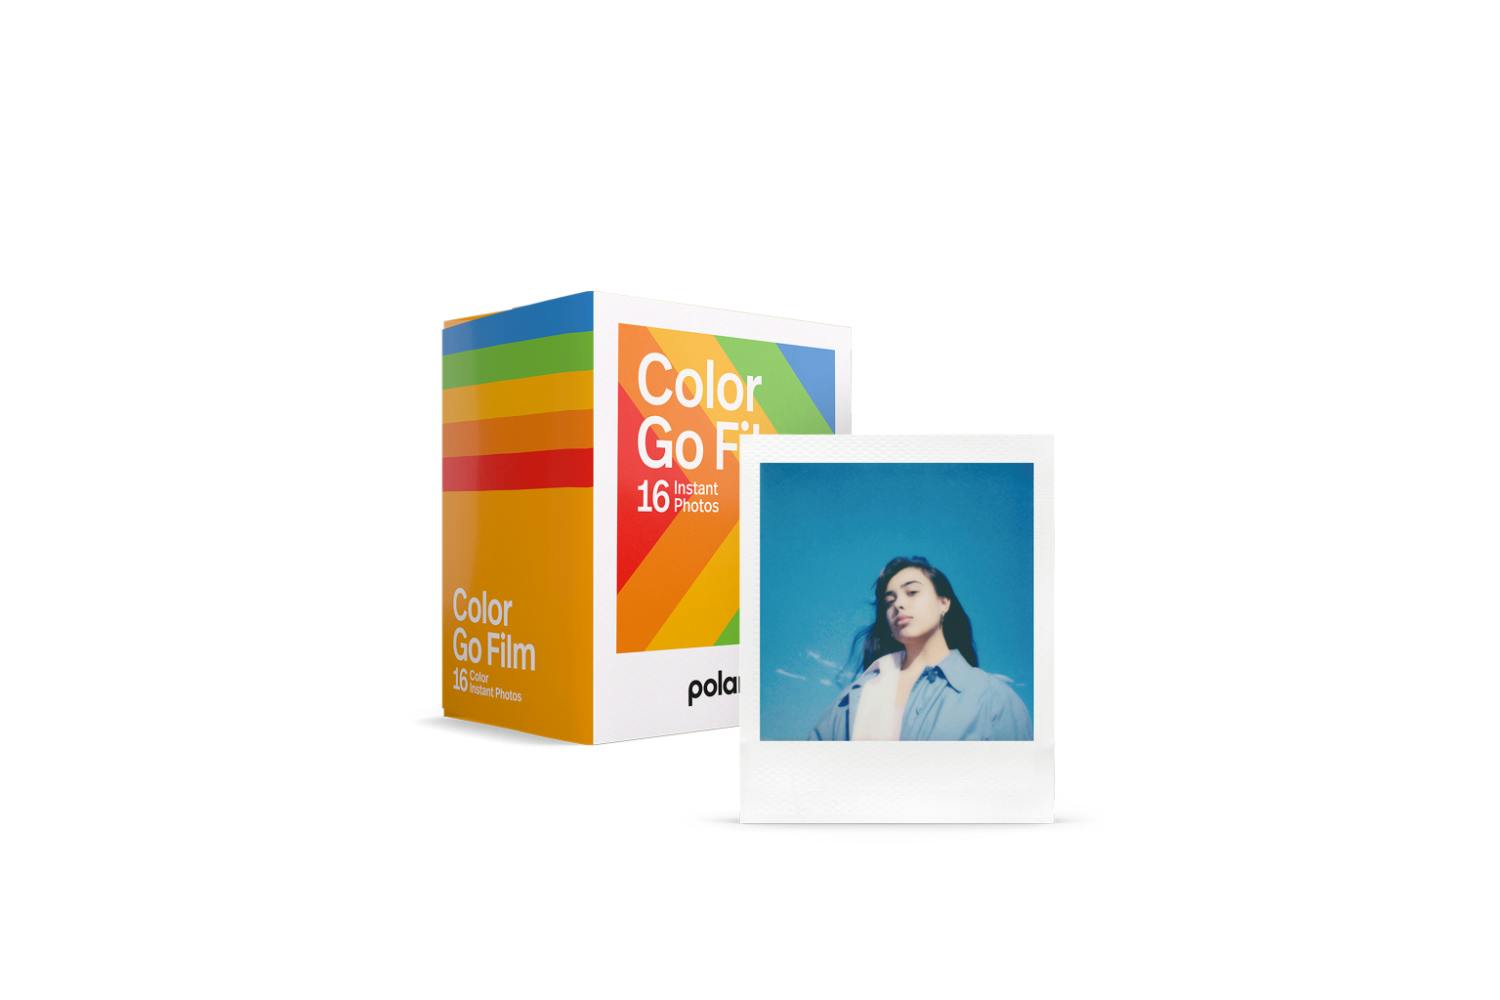 Polaroid Originals Color i-Type Instant Film (8 Exposures, Gradient Frame  Edition)